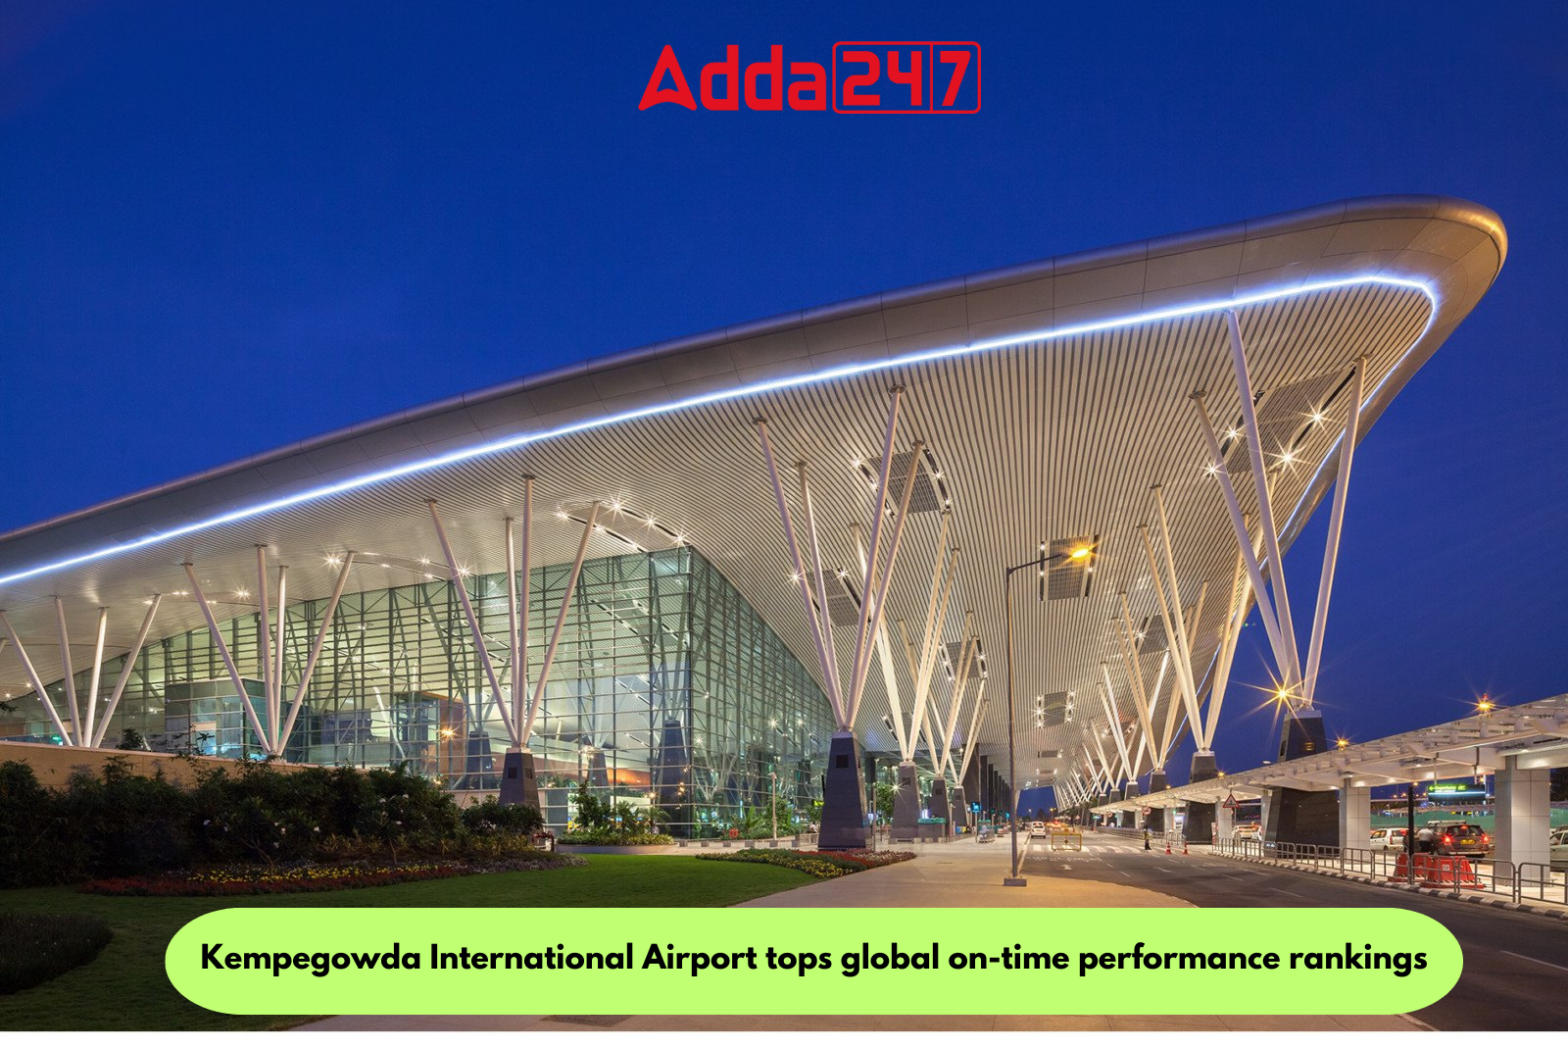 भारत का यह एयरपोर्ट बना विश्व का नंबर वन पंक्चुअल Airport |_20.1